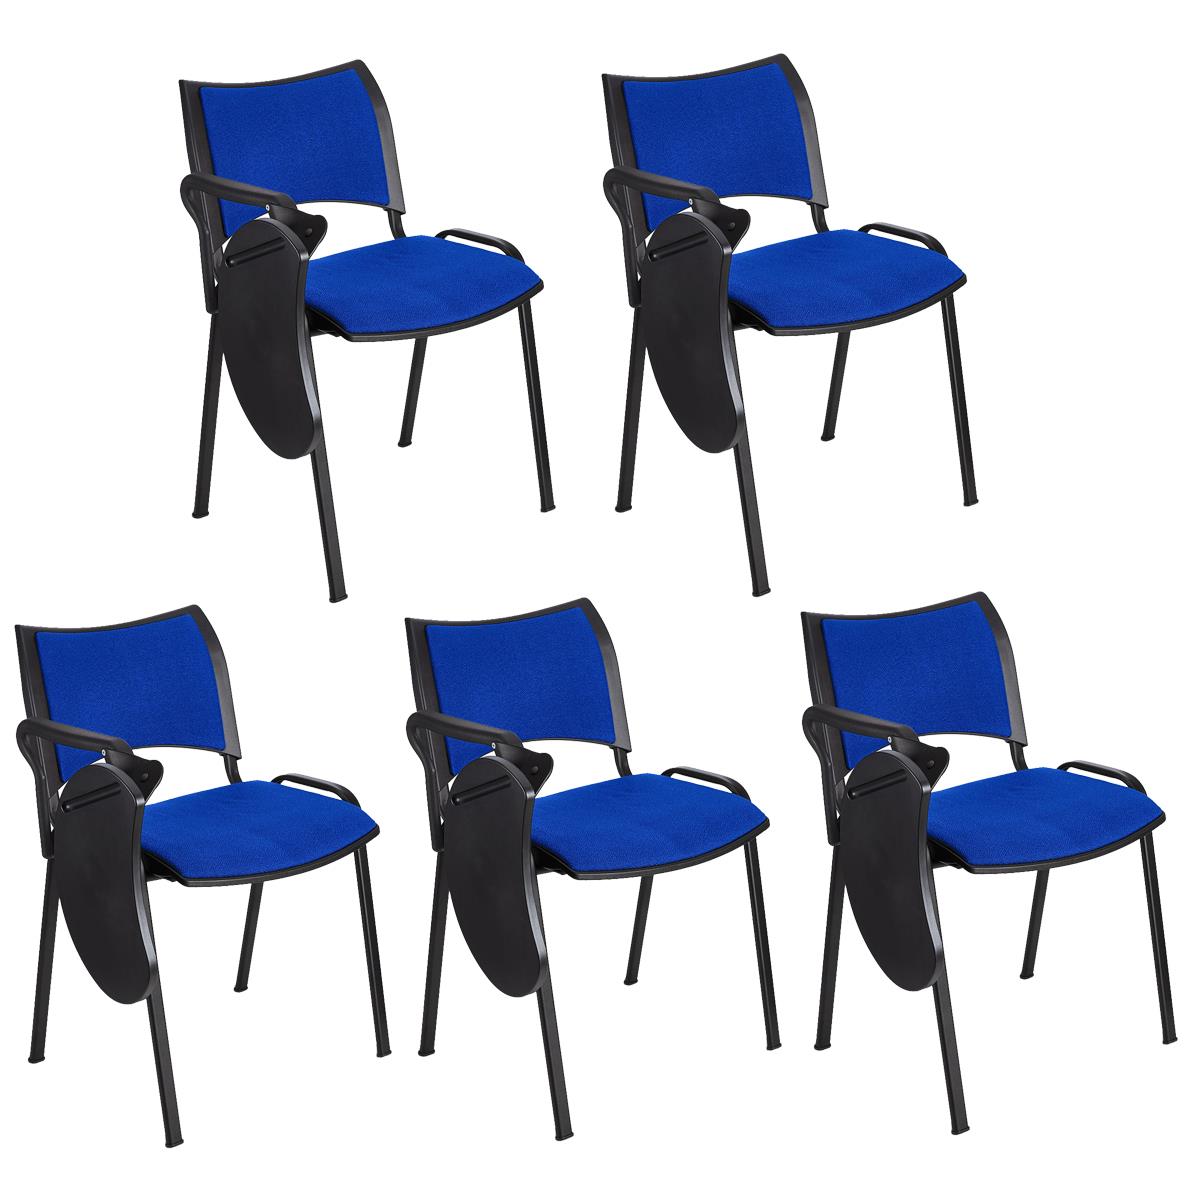 Lote 5 Cadeiras de Visita ROMEL COM PALMATÓRIA, Empilhável, Pernas Pretas, Em Pano, Azul